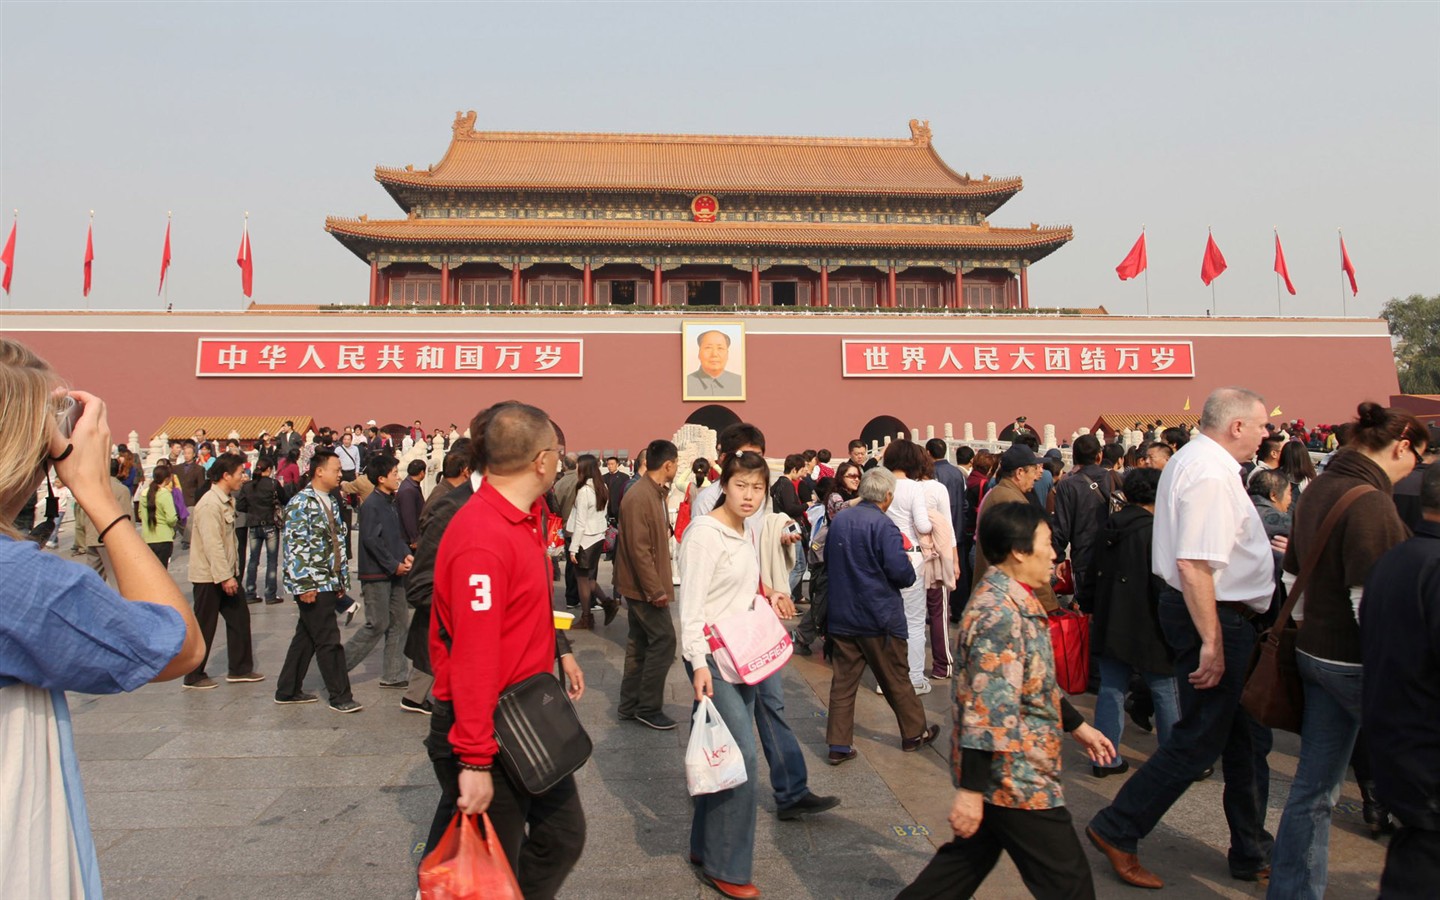 Tour Beijing - Platz des Himmlischen Friedens (GGC Werke) #12 - 1440x900